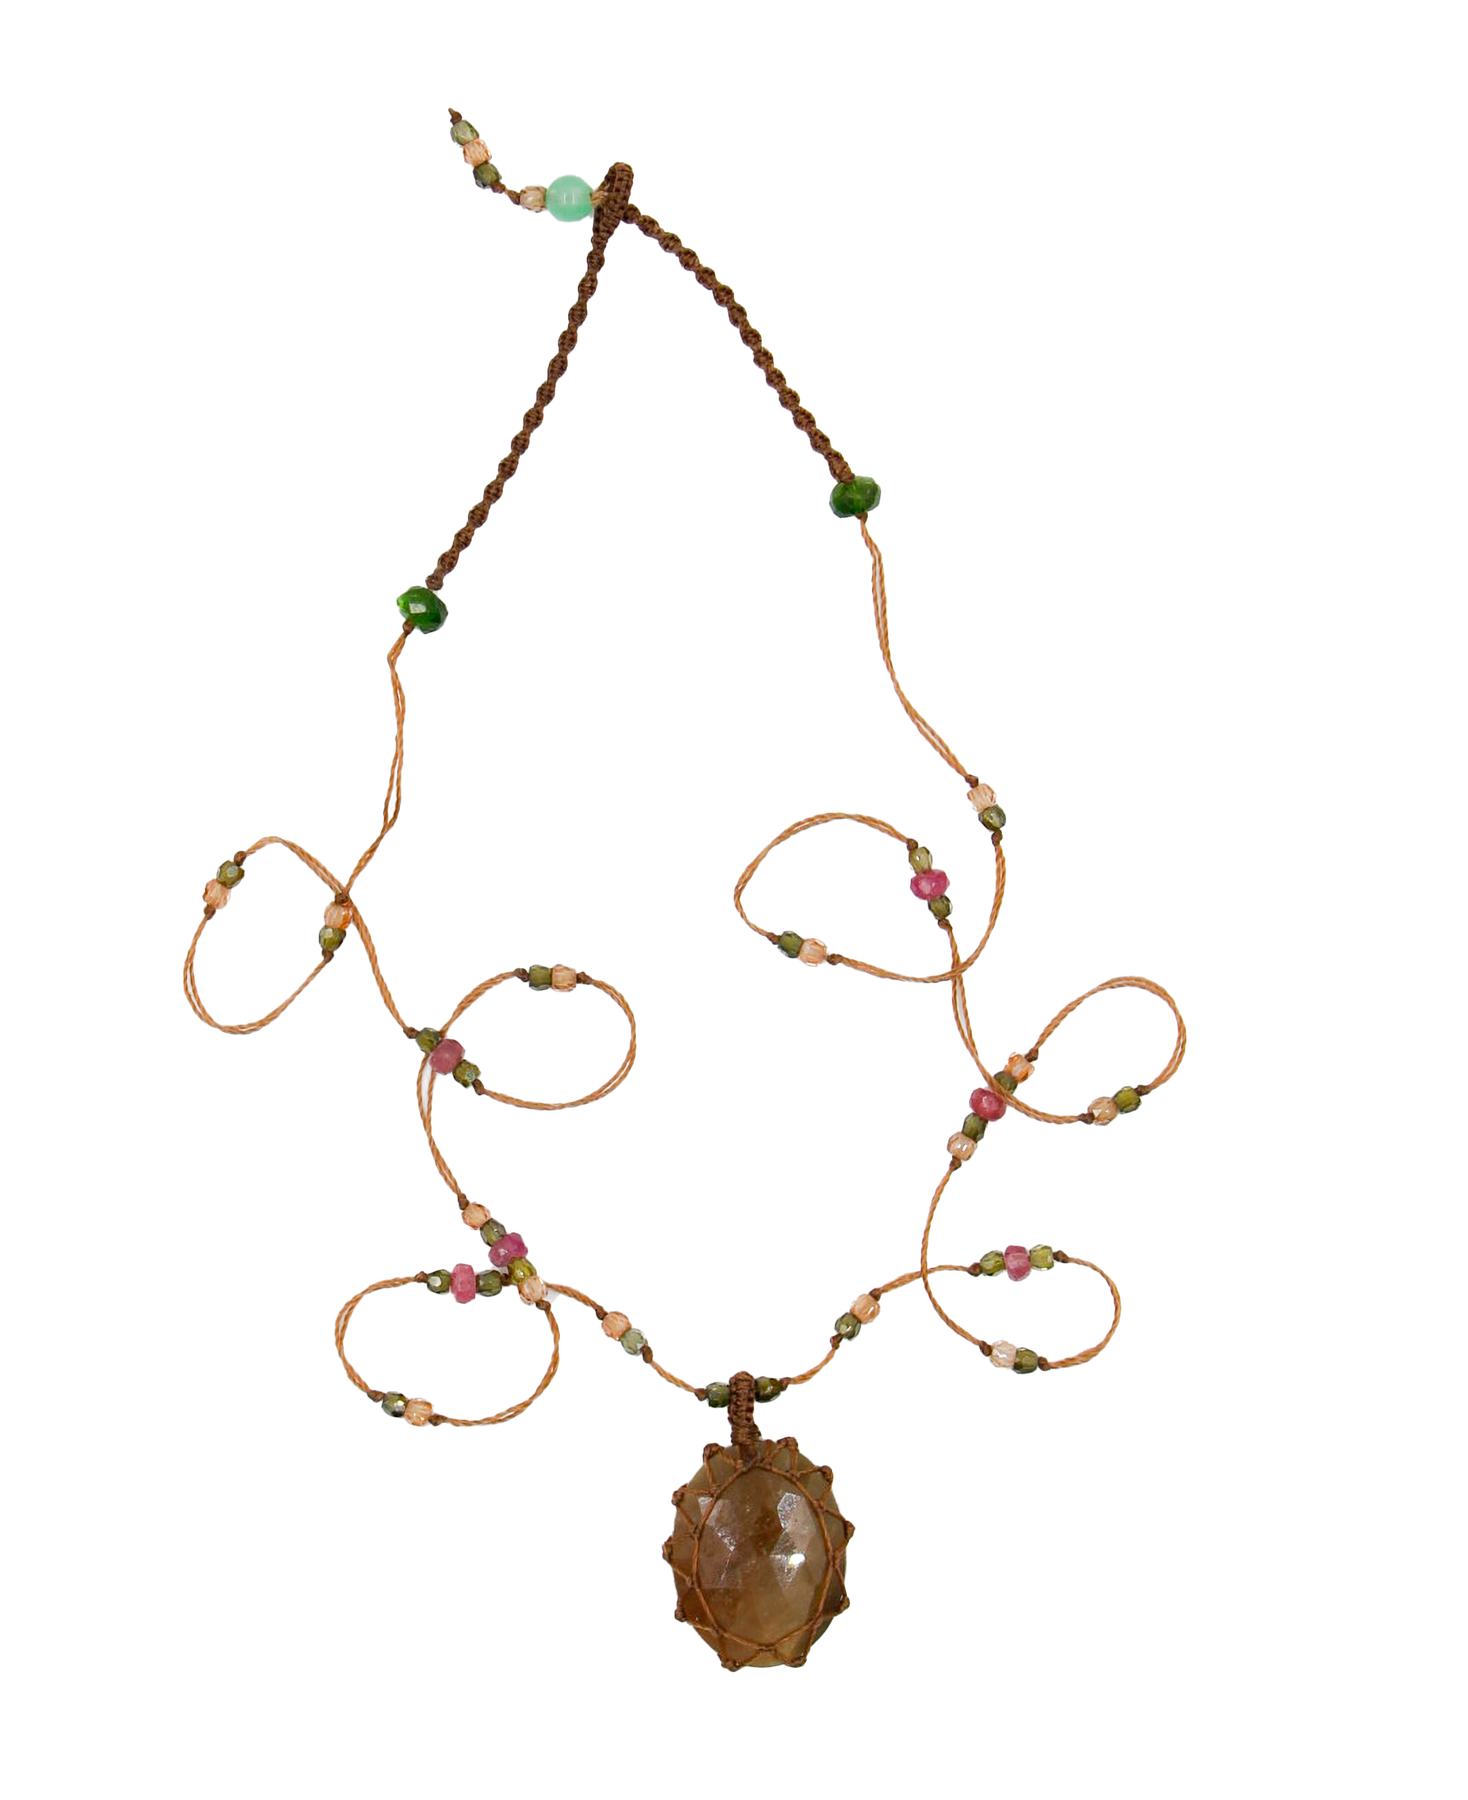 Short Tibetan Necklace - Brown Corundum - Mix Pink Tourmaline - Tobacco Thread